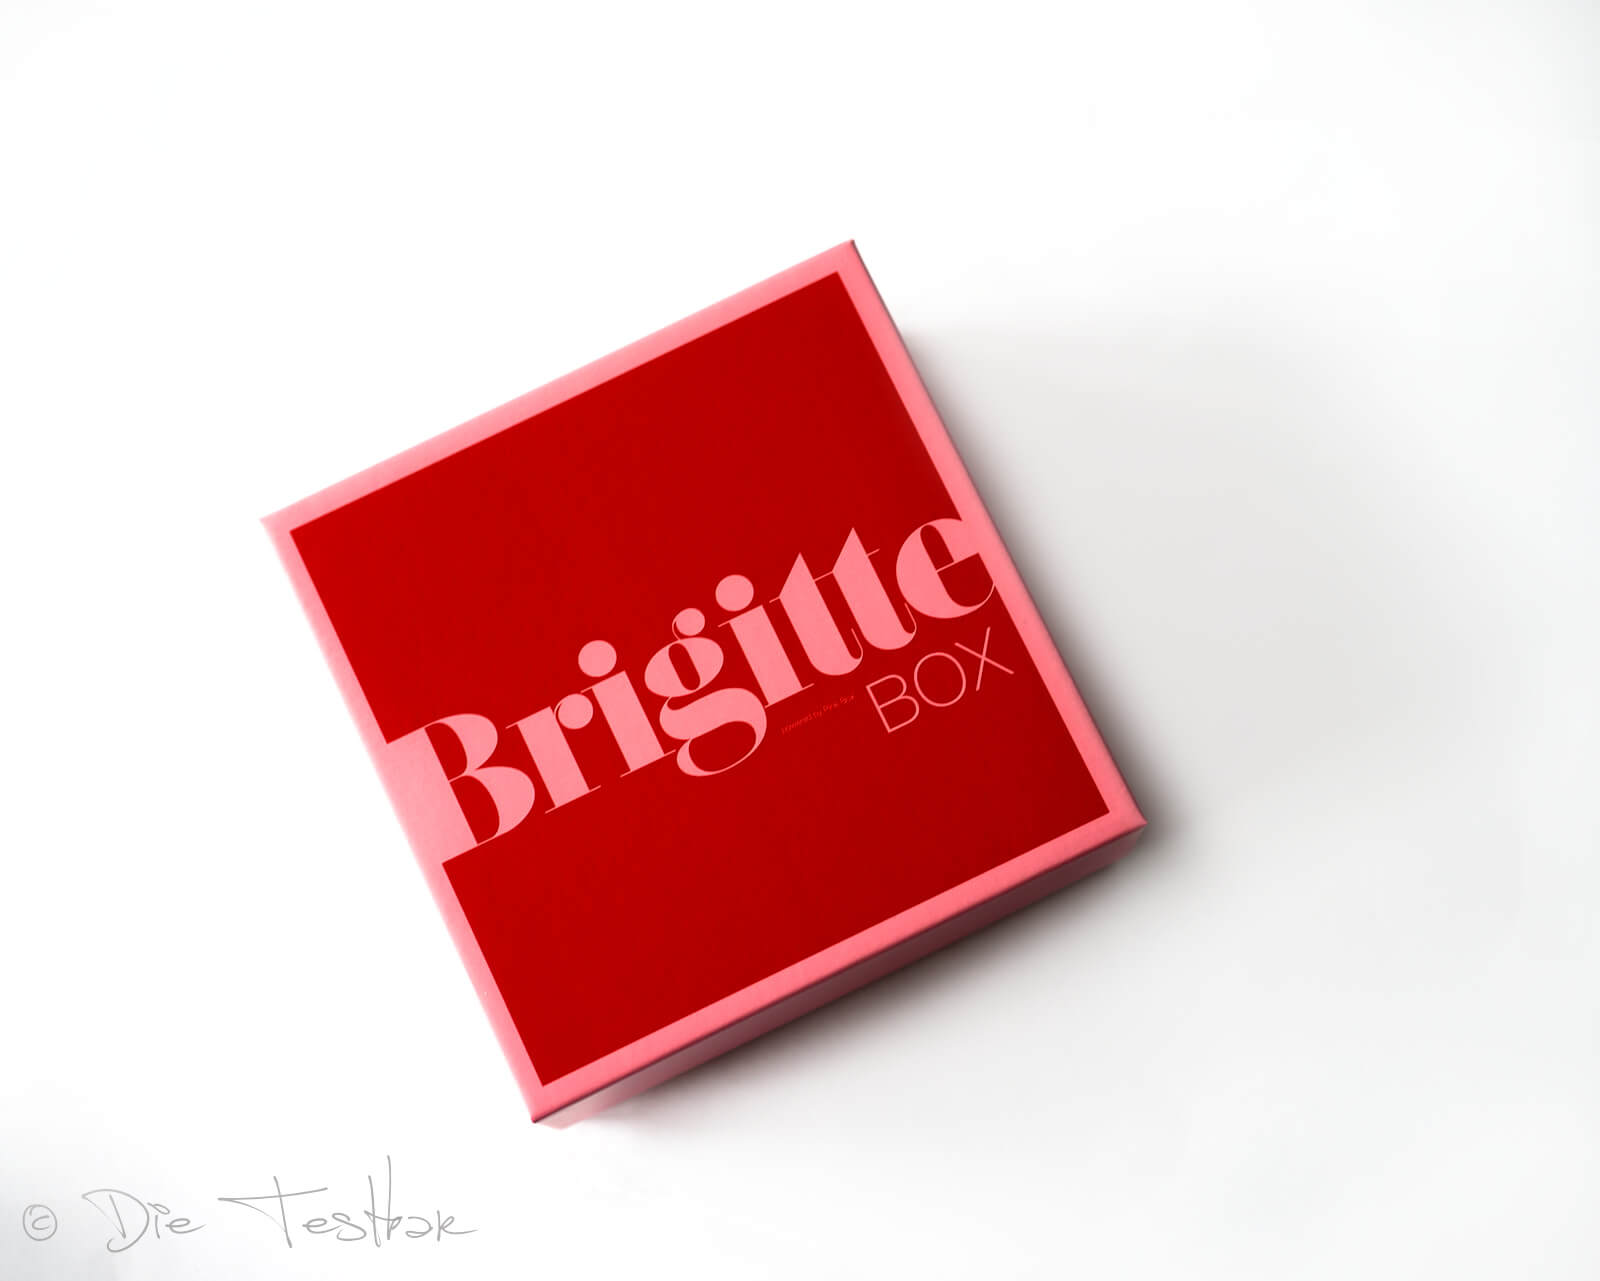 BRIGITTE Box Nr. 4/2021 im August 2021 – Glücksmomente